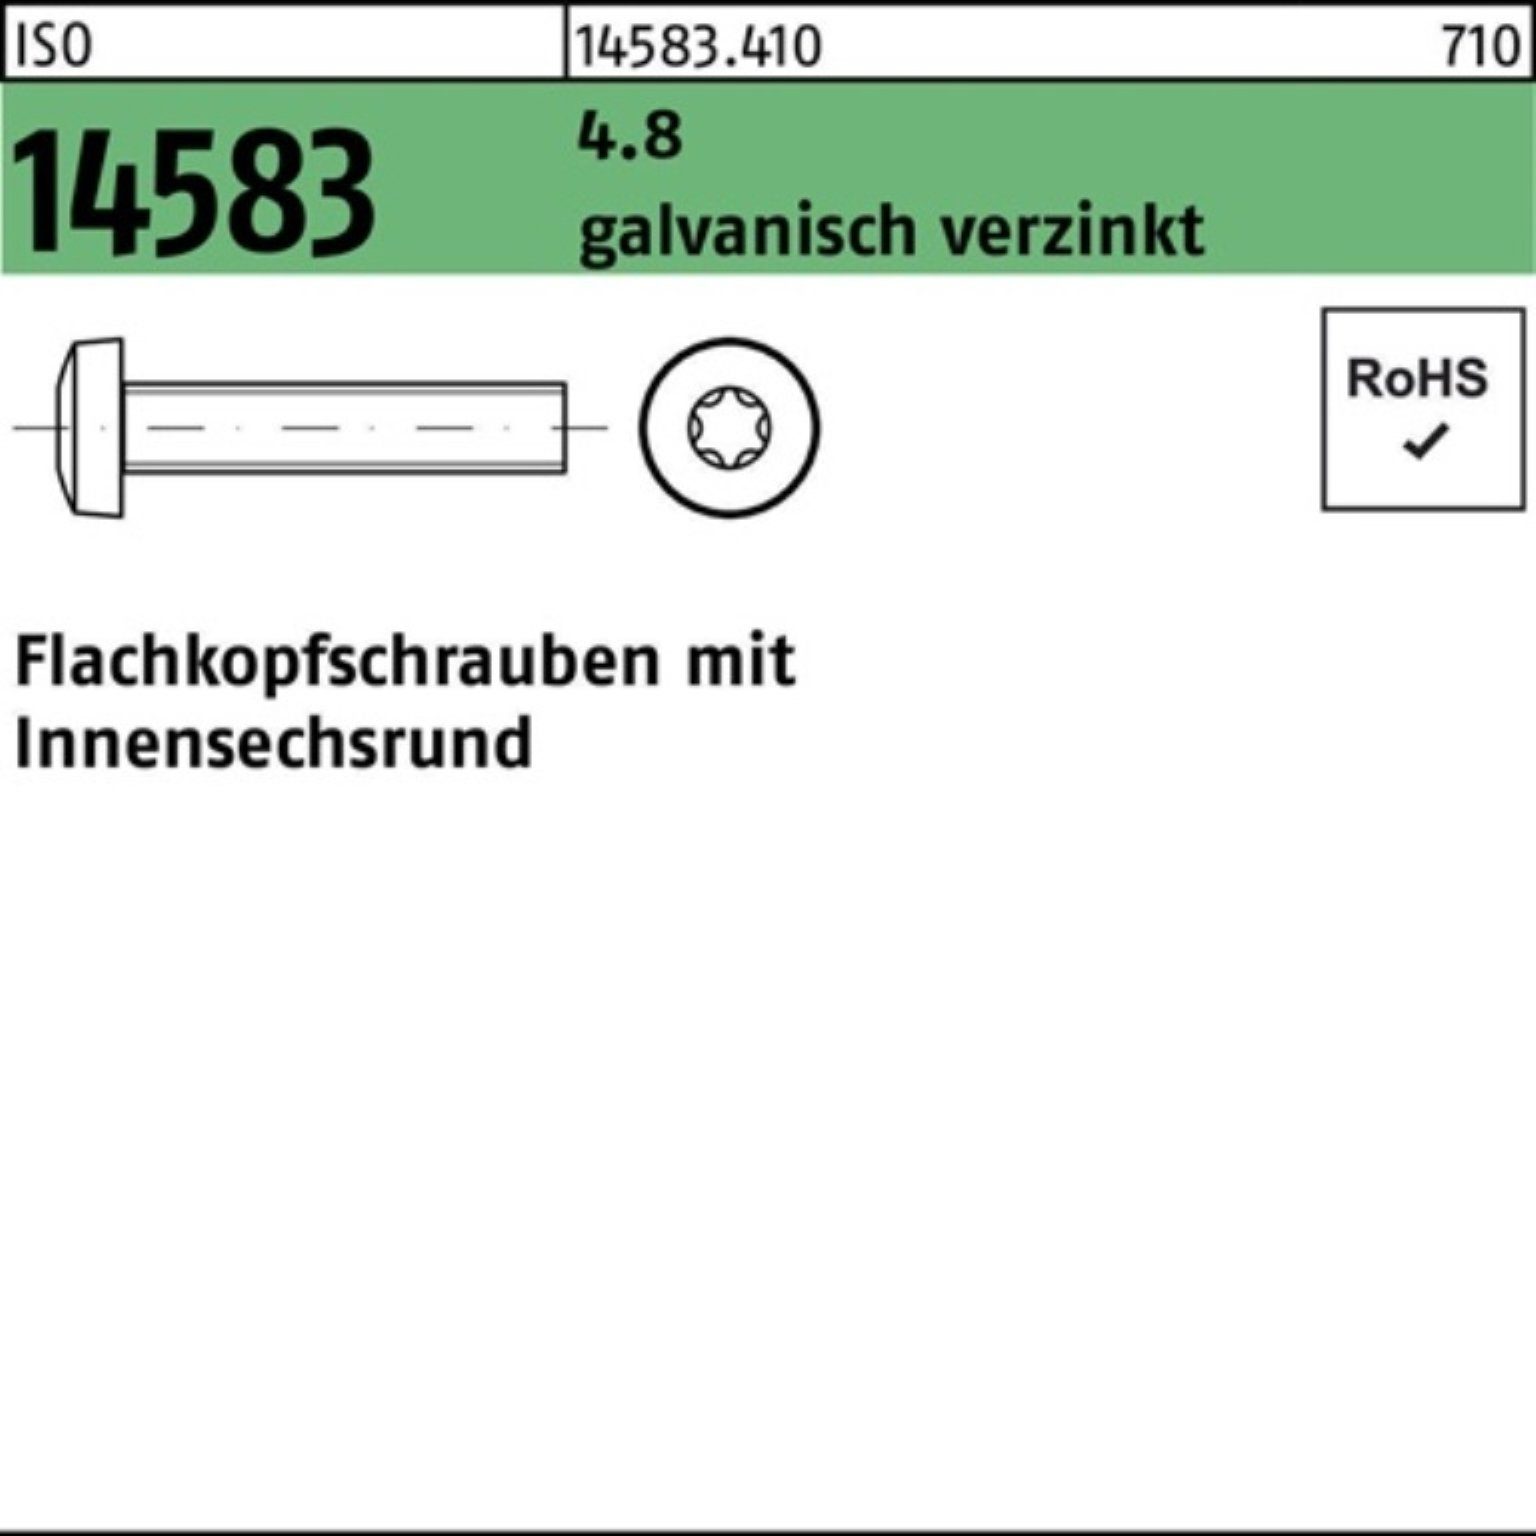 ISR M3x4 Reyher 4.8 2000St galv.verz. ISO Pack Flachkopfschraube Schraube 2000er 14583